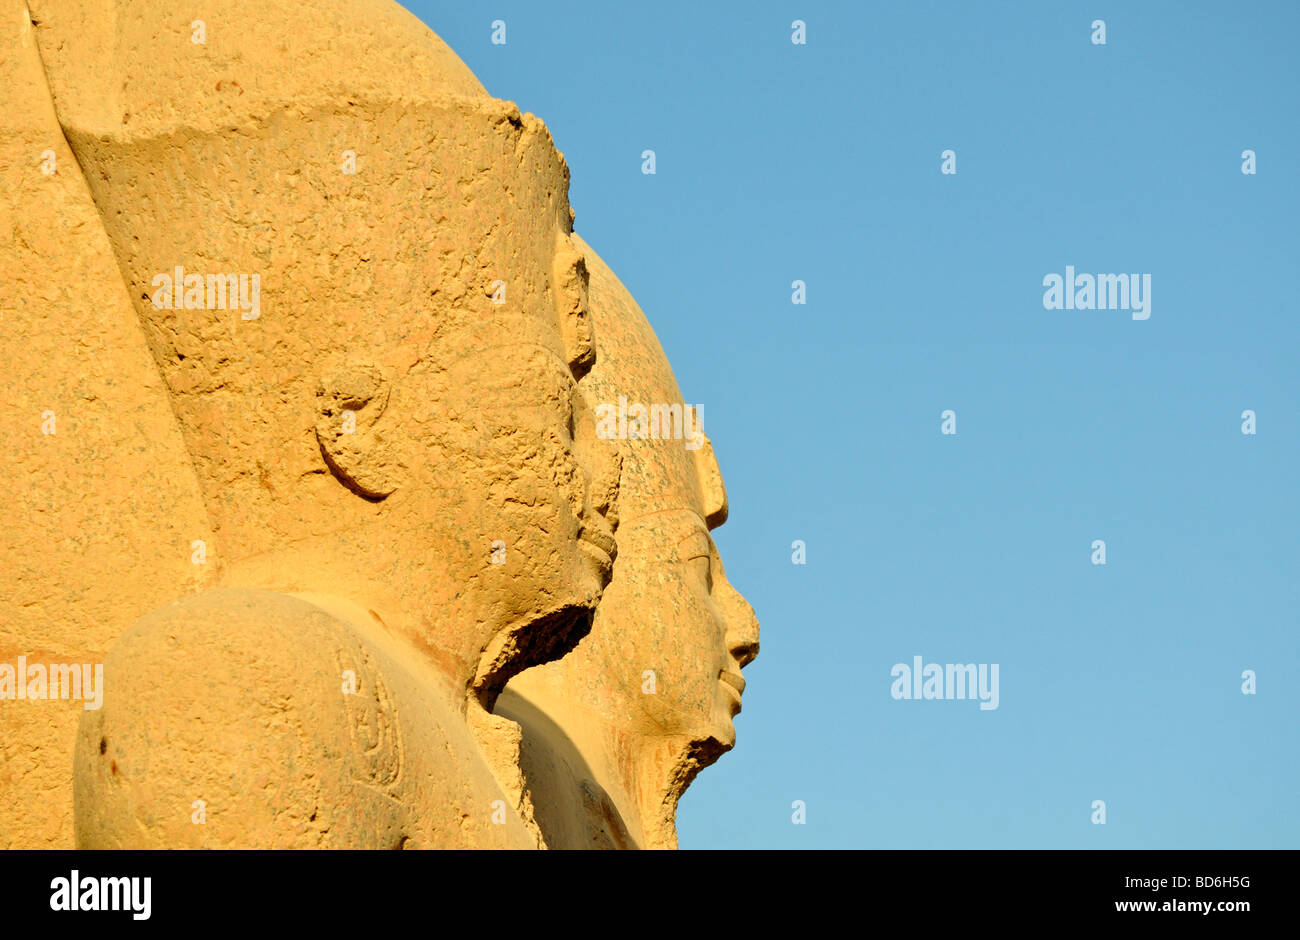 Des statues colossales à cour de cachette de Cité parlementaire d'Amon Re complexe du temple de Karnak Louxor Égypte près de Banque D'Images